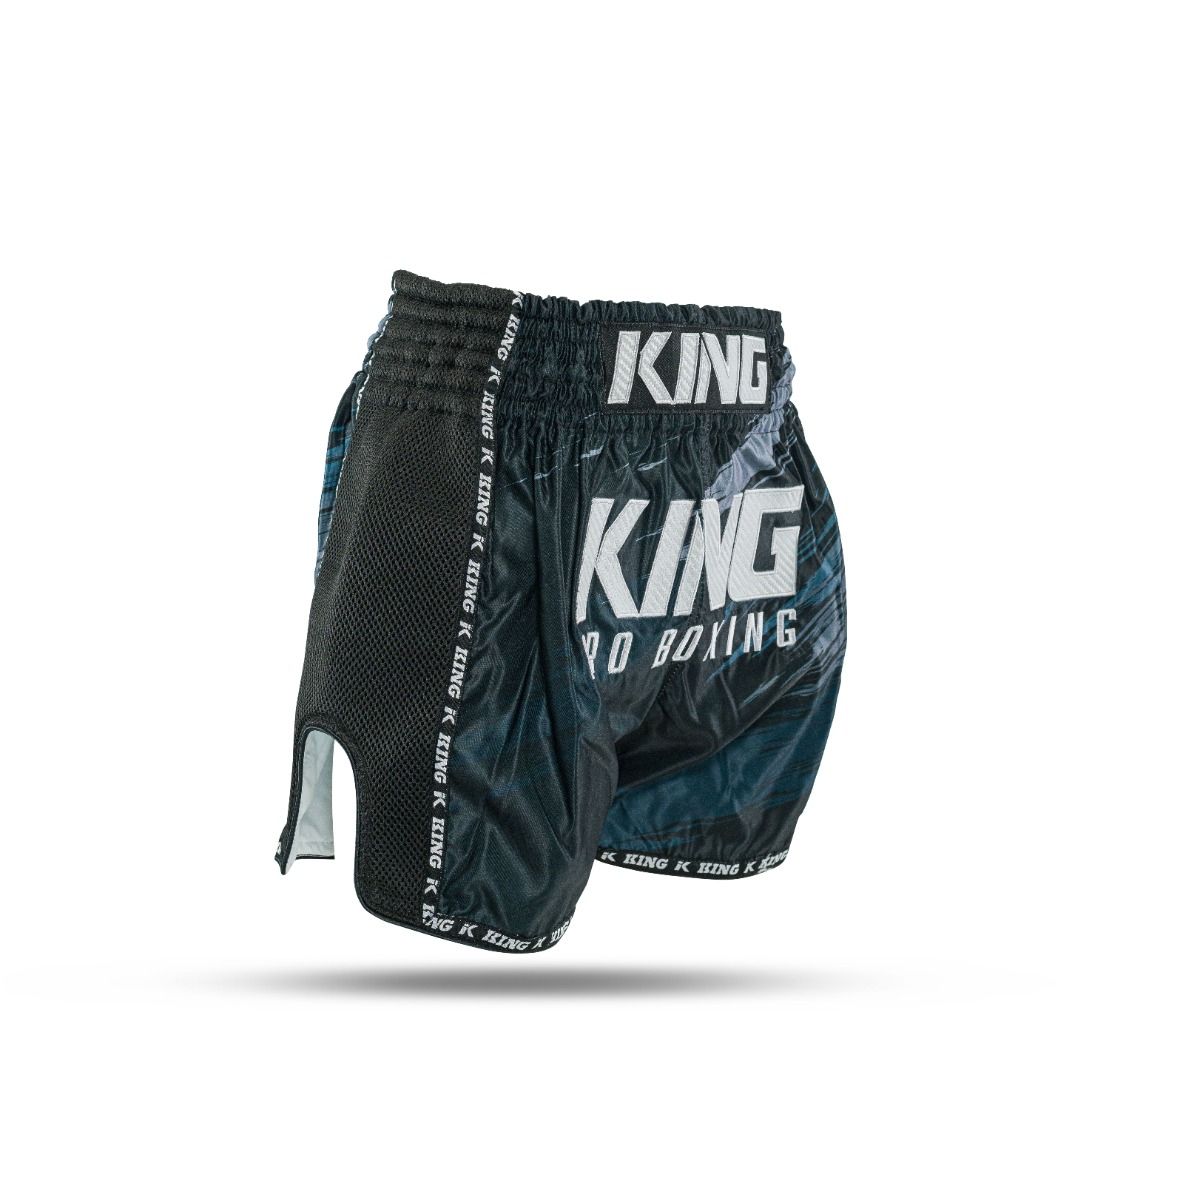 King Pro Boxing-Fightshort-Kickboksbroek-Short-Storm 1-Zwart-Grijs